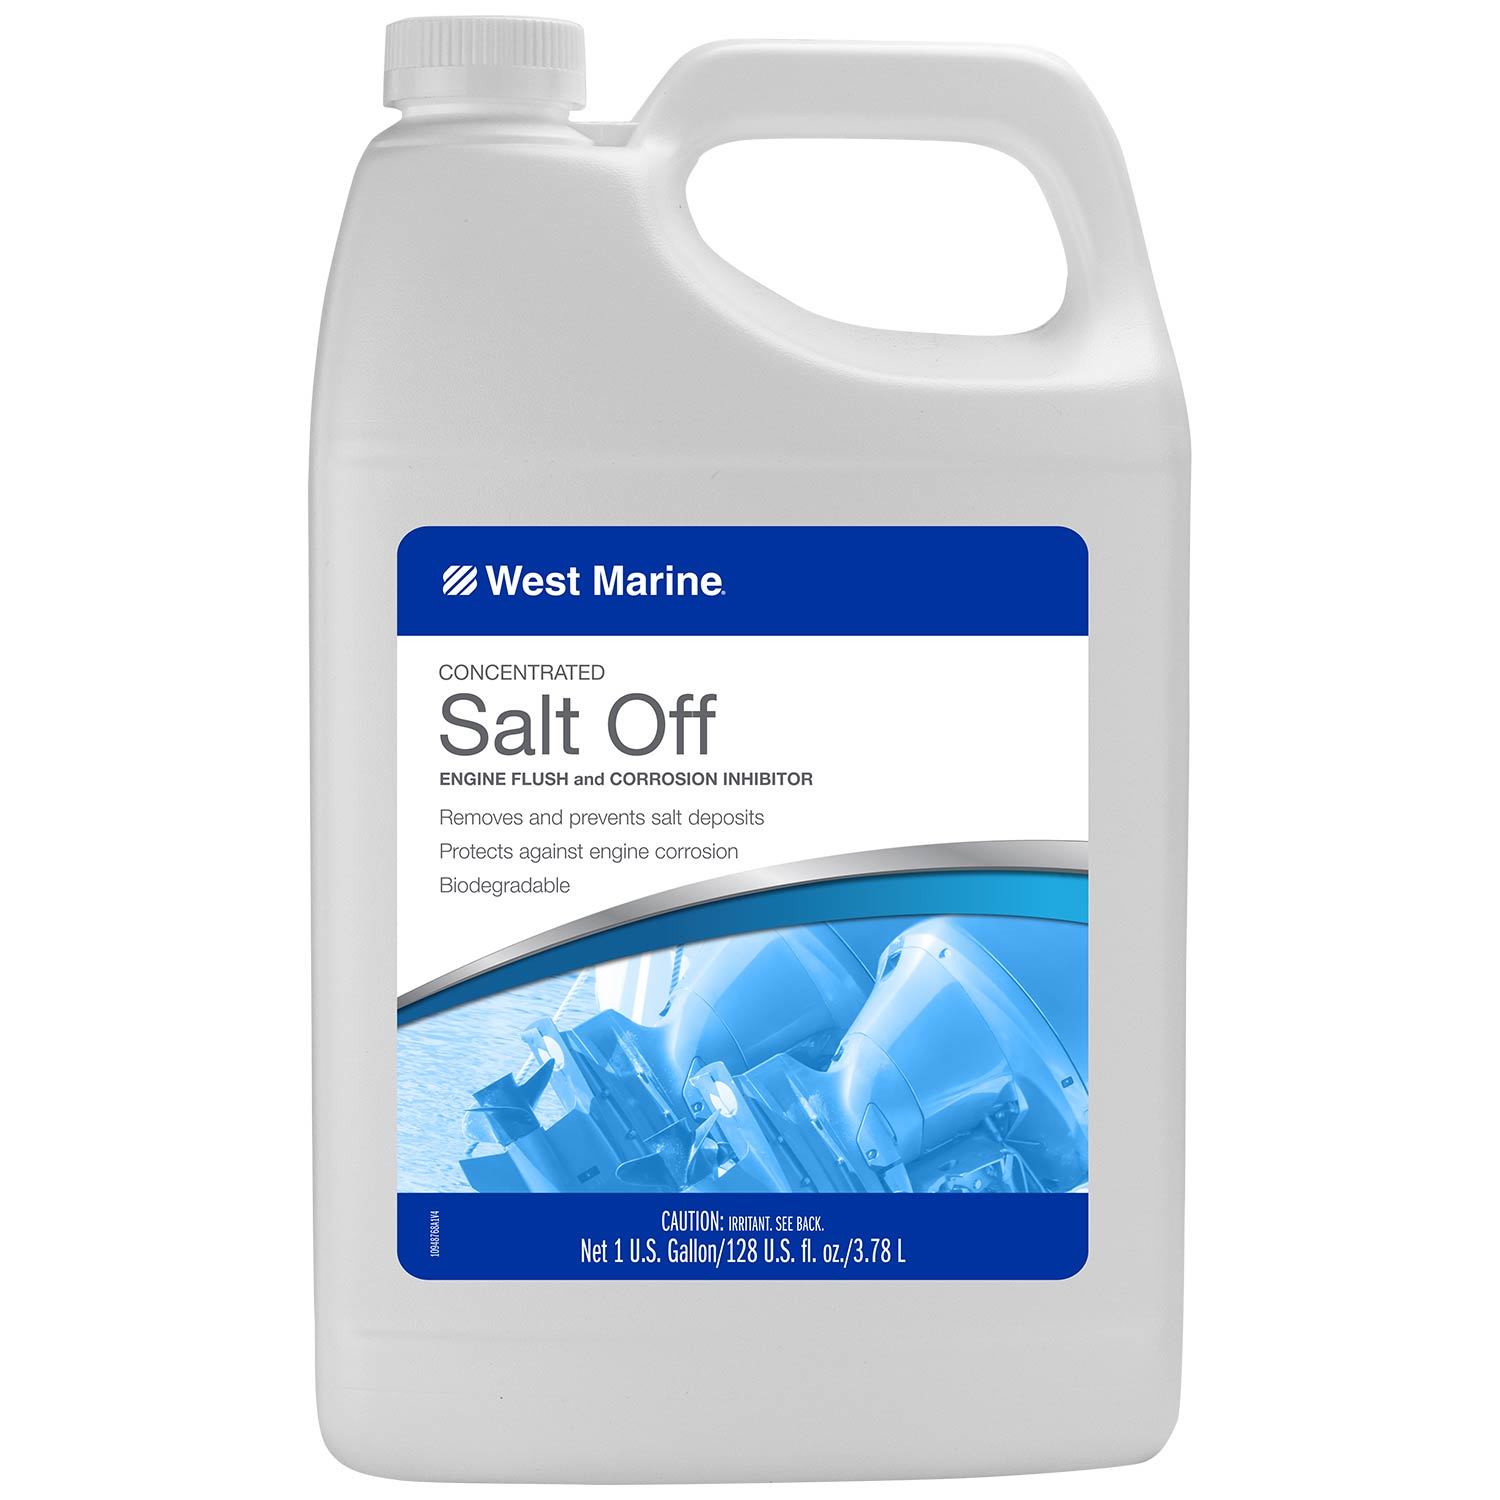 Star Brite Salt Off Kit w/Applicator 32oz